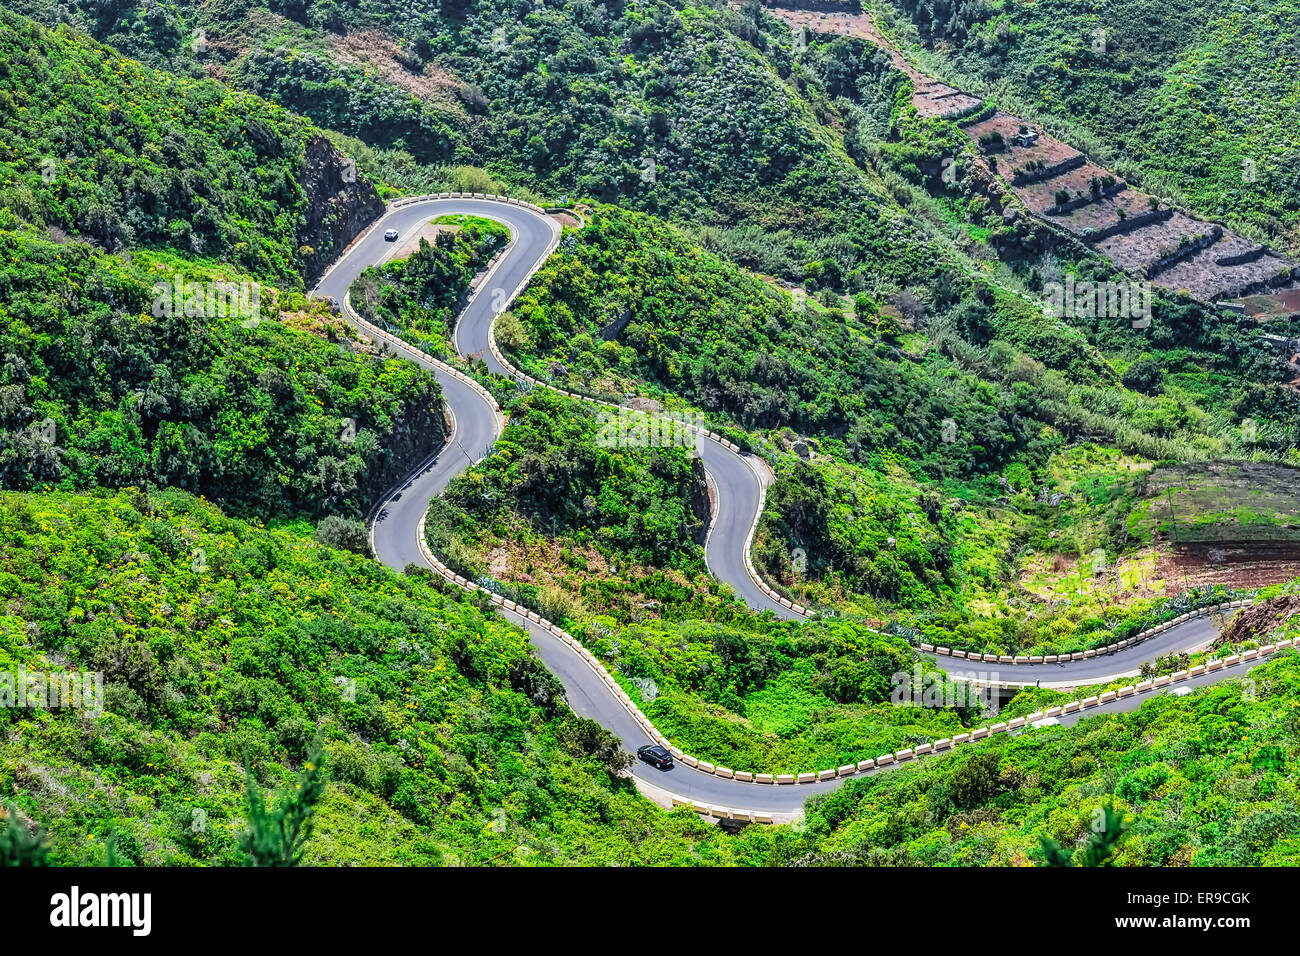 Wicklung oder Serpentine Road im grünen Hochtal Teneriffa Kanarische Inseln, Spanien im Frühling oder Sommer Stockfoto